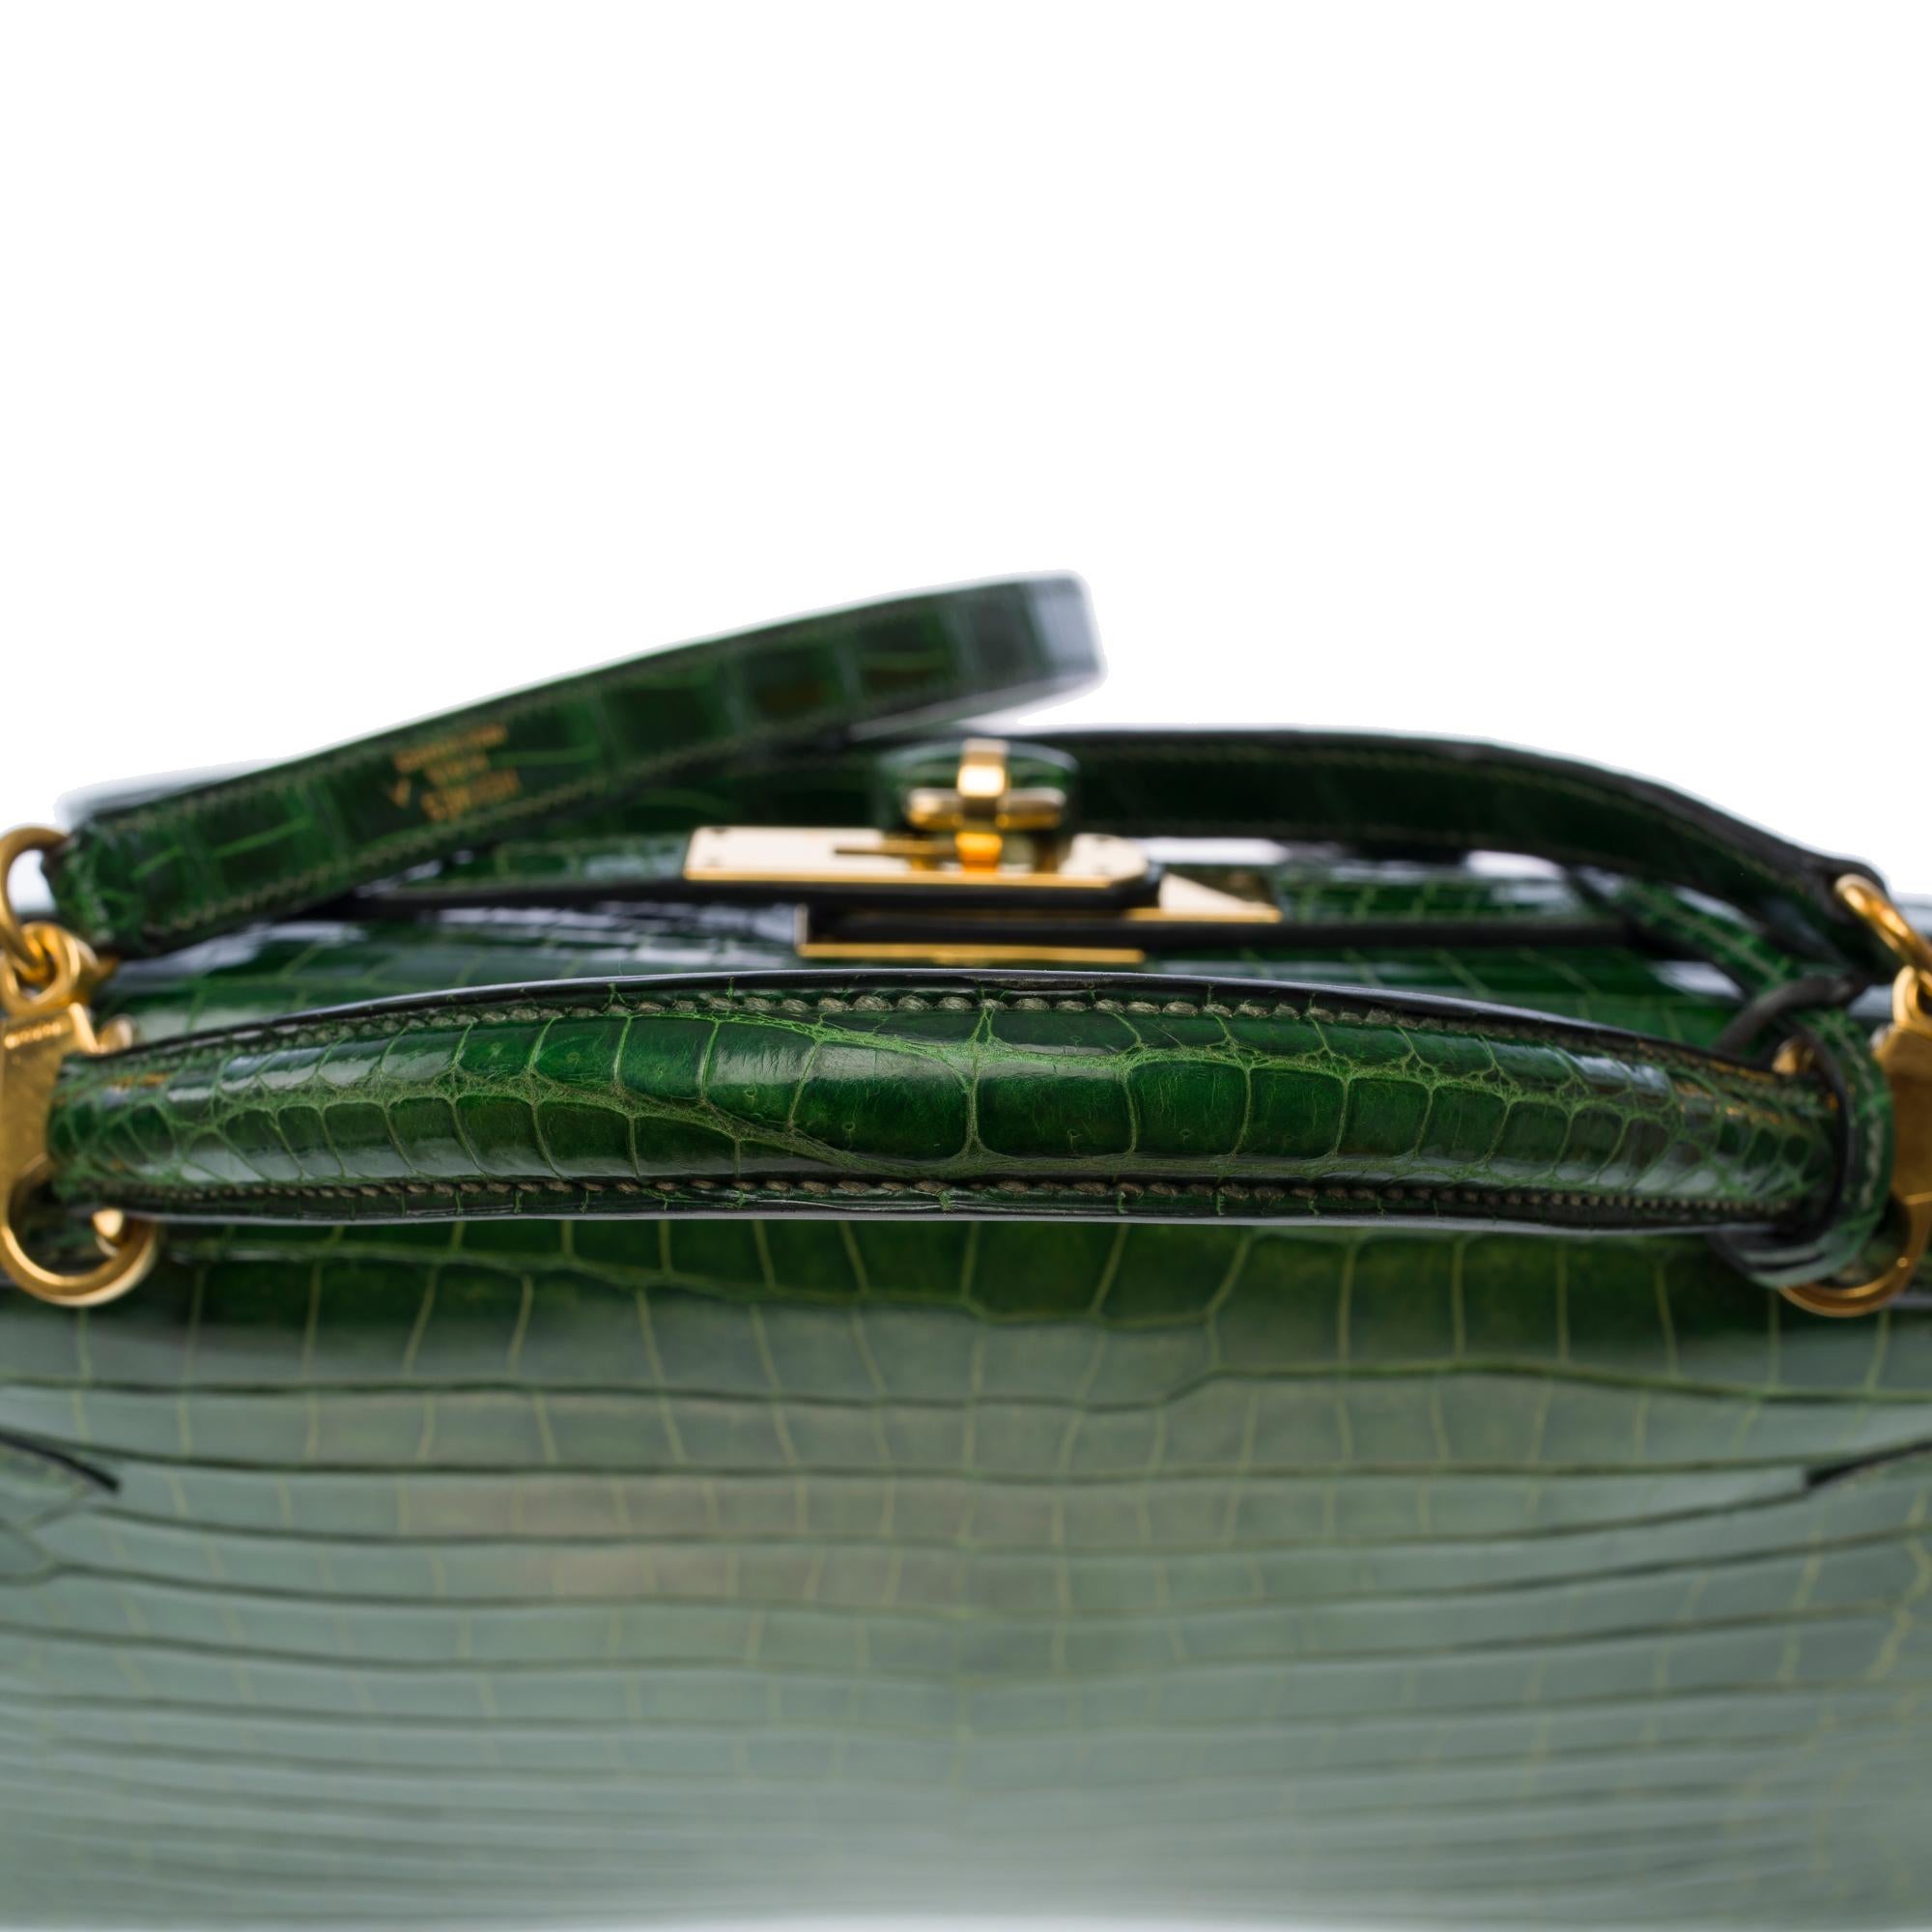 Rare Hermès Kelly 32 saddle handbag strap in Green Emerald Crocodilylus , GHW 5